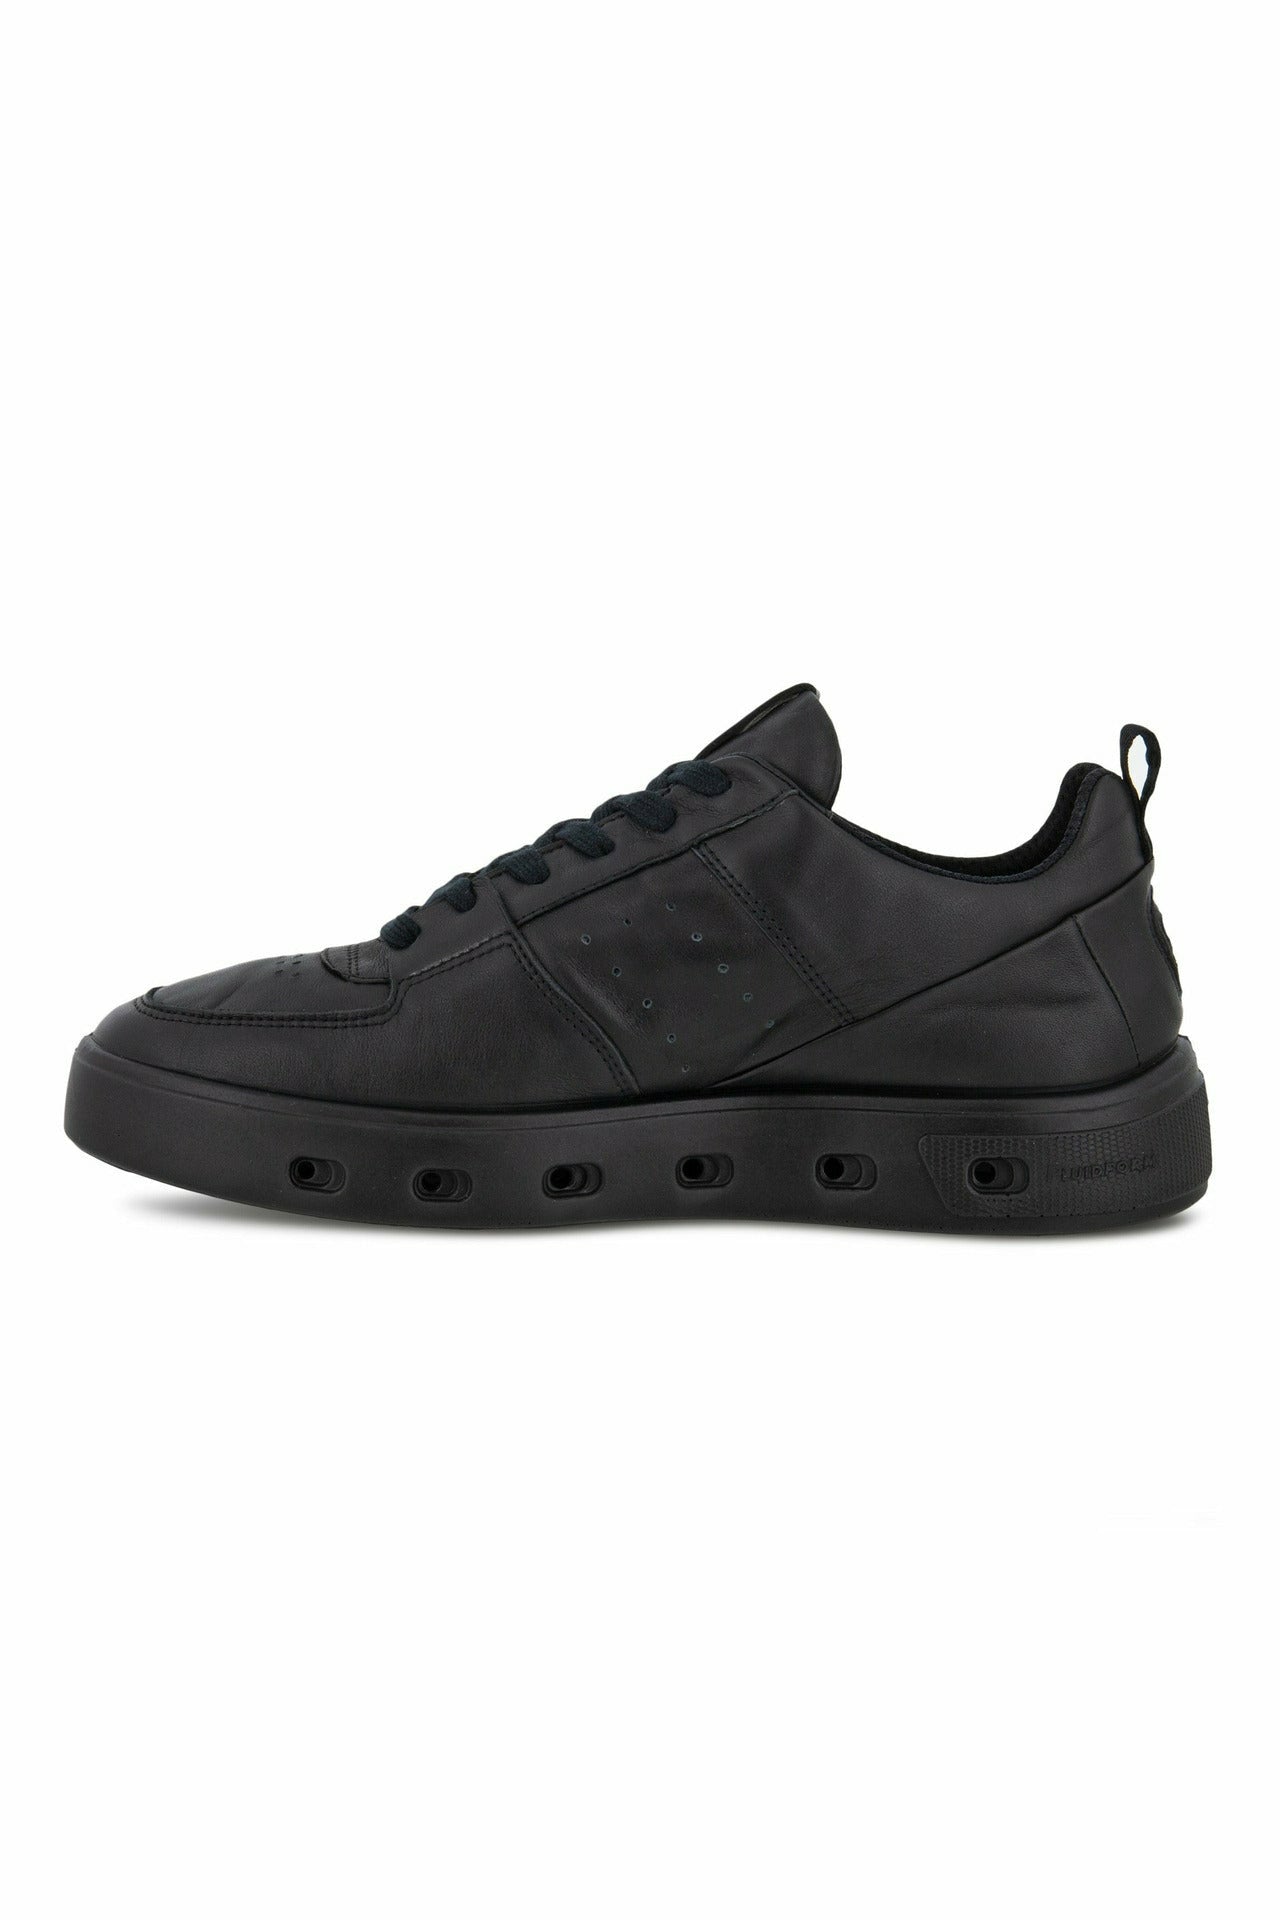 ECCO Street 720W sneaker 209713-01001 in Black leather